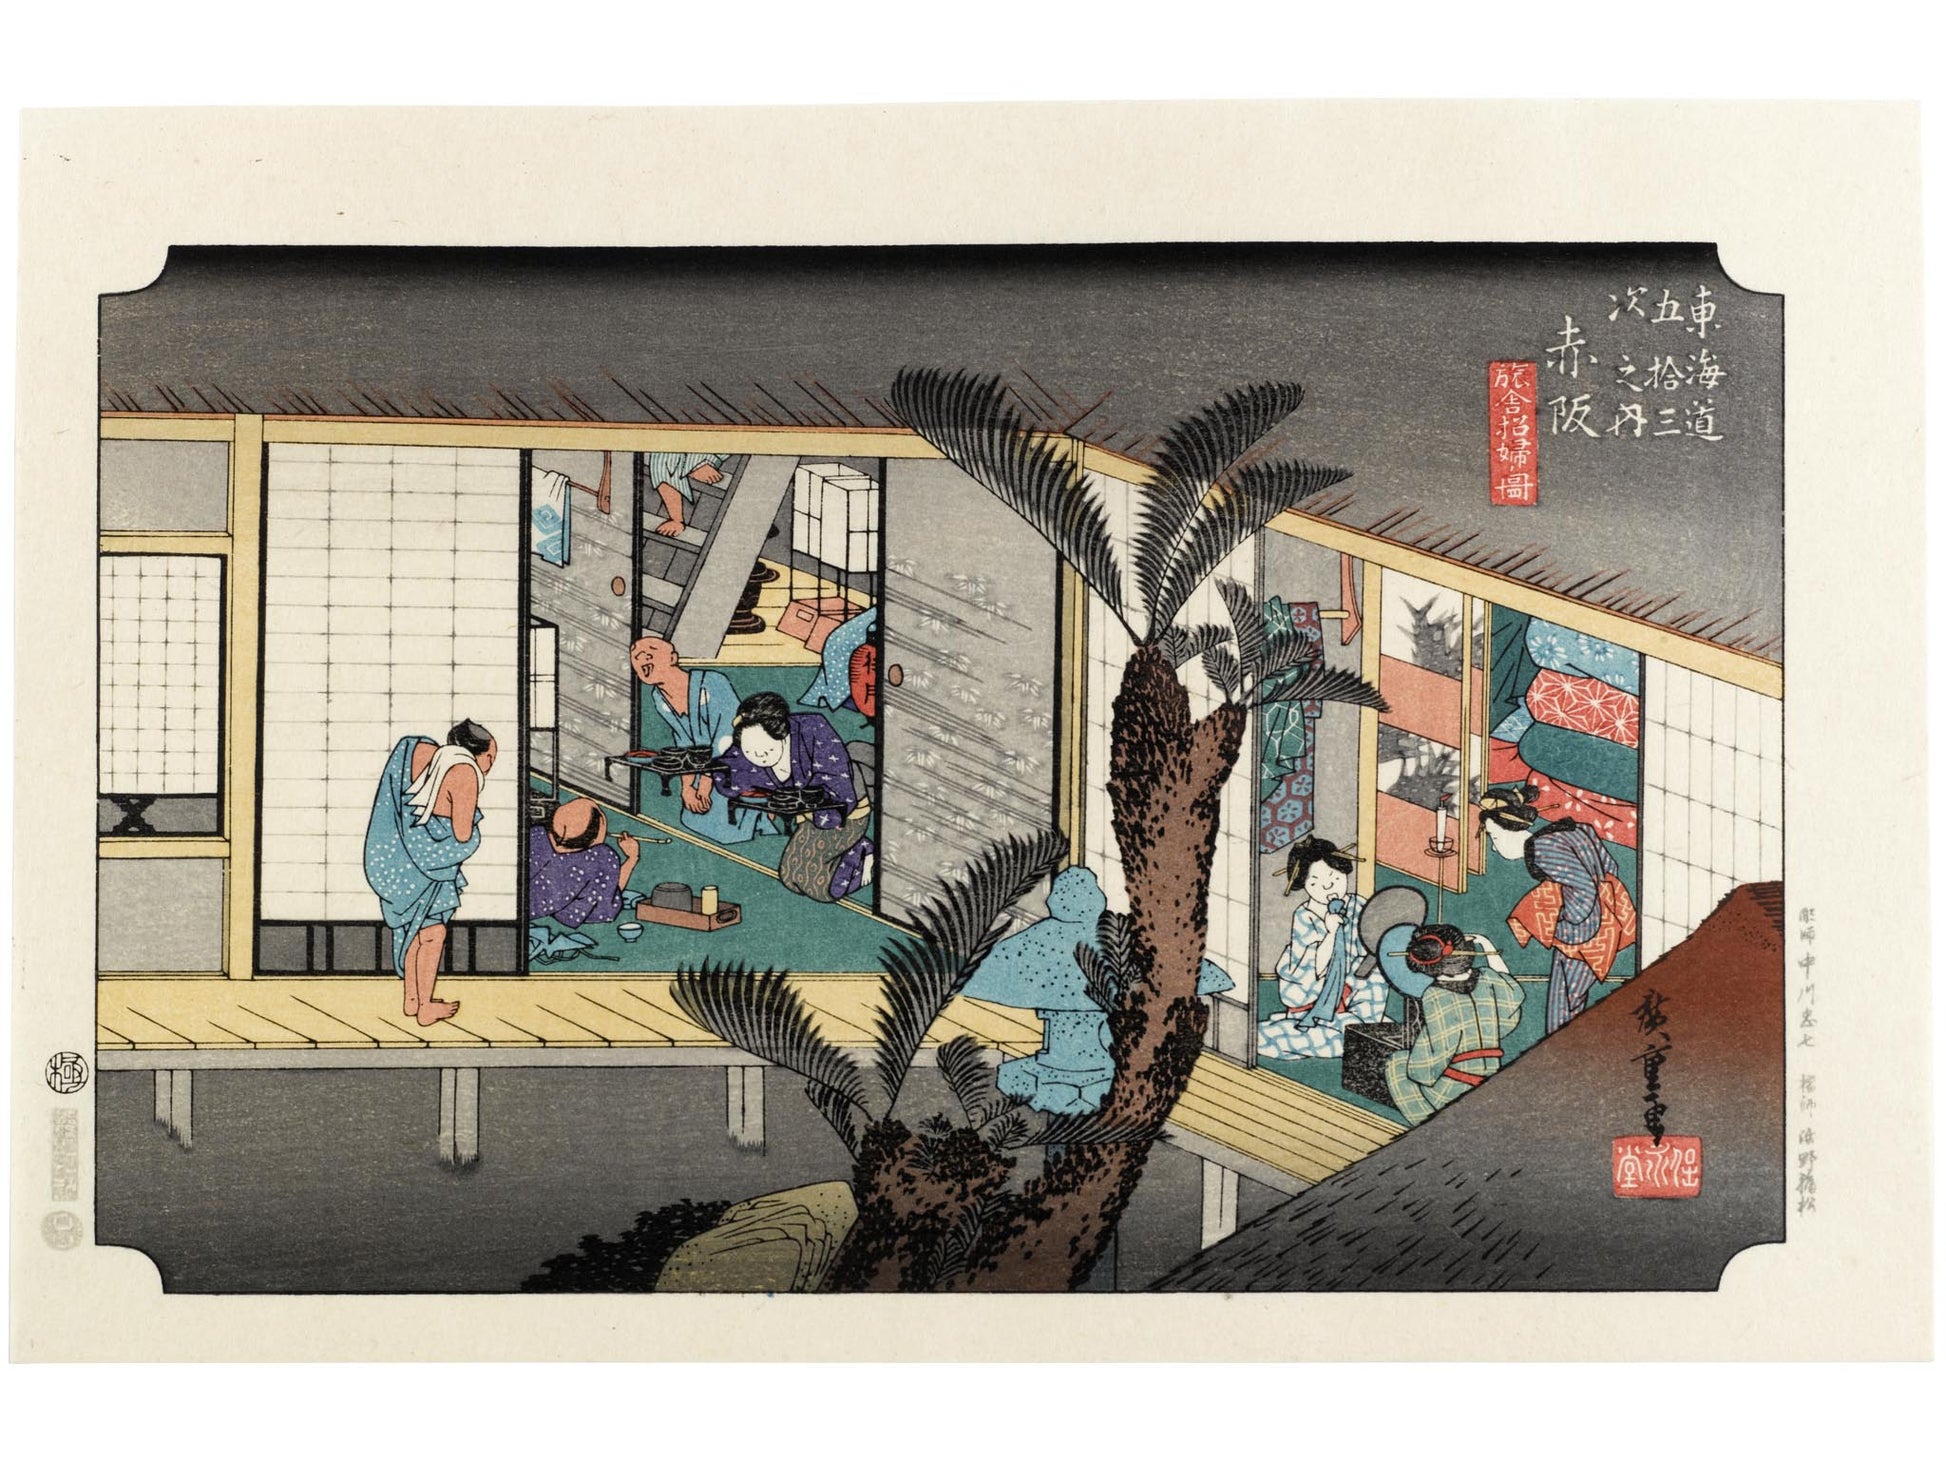 Estampes japonaises du Kisokaido au musée